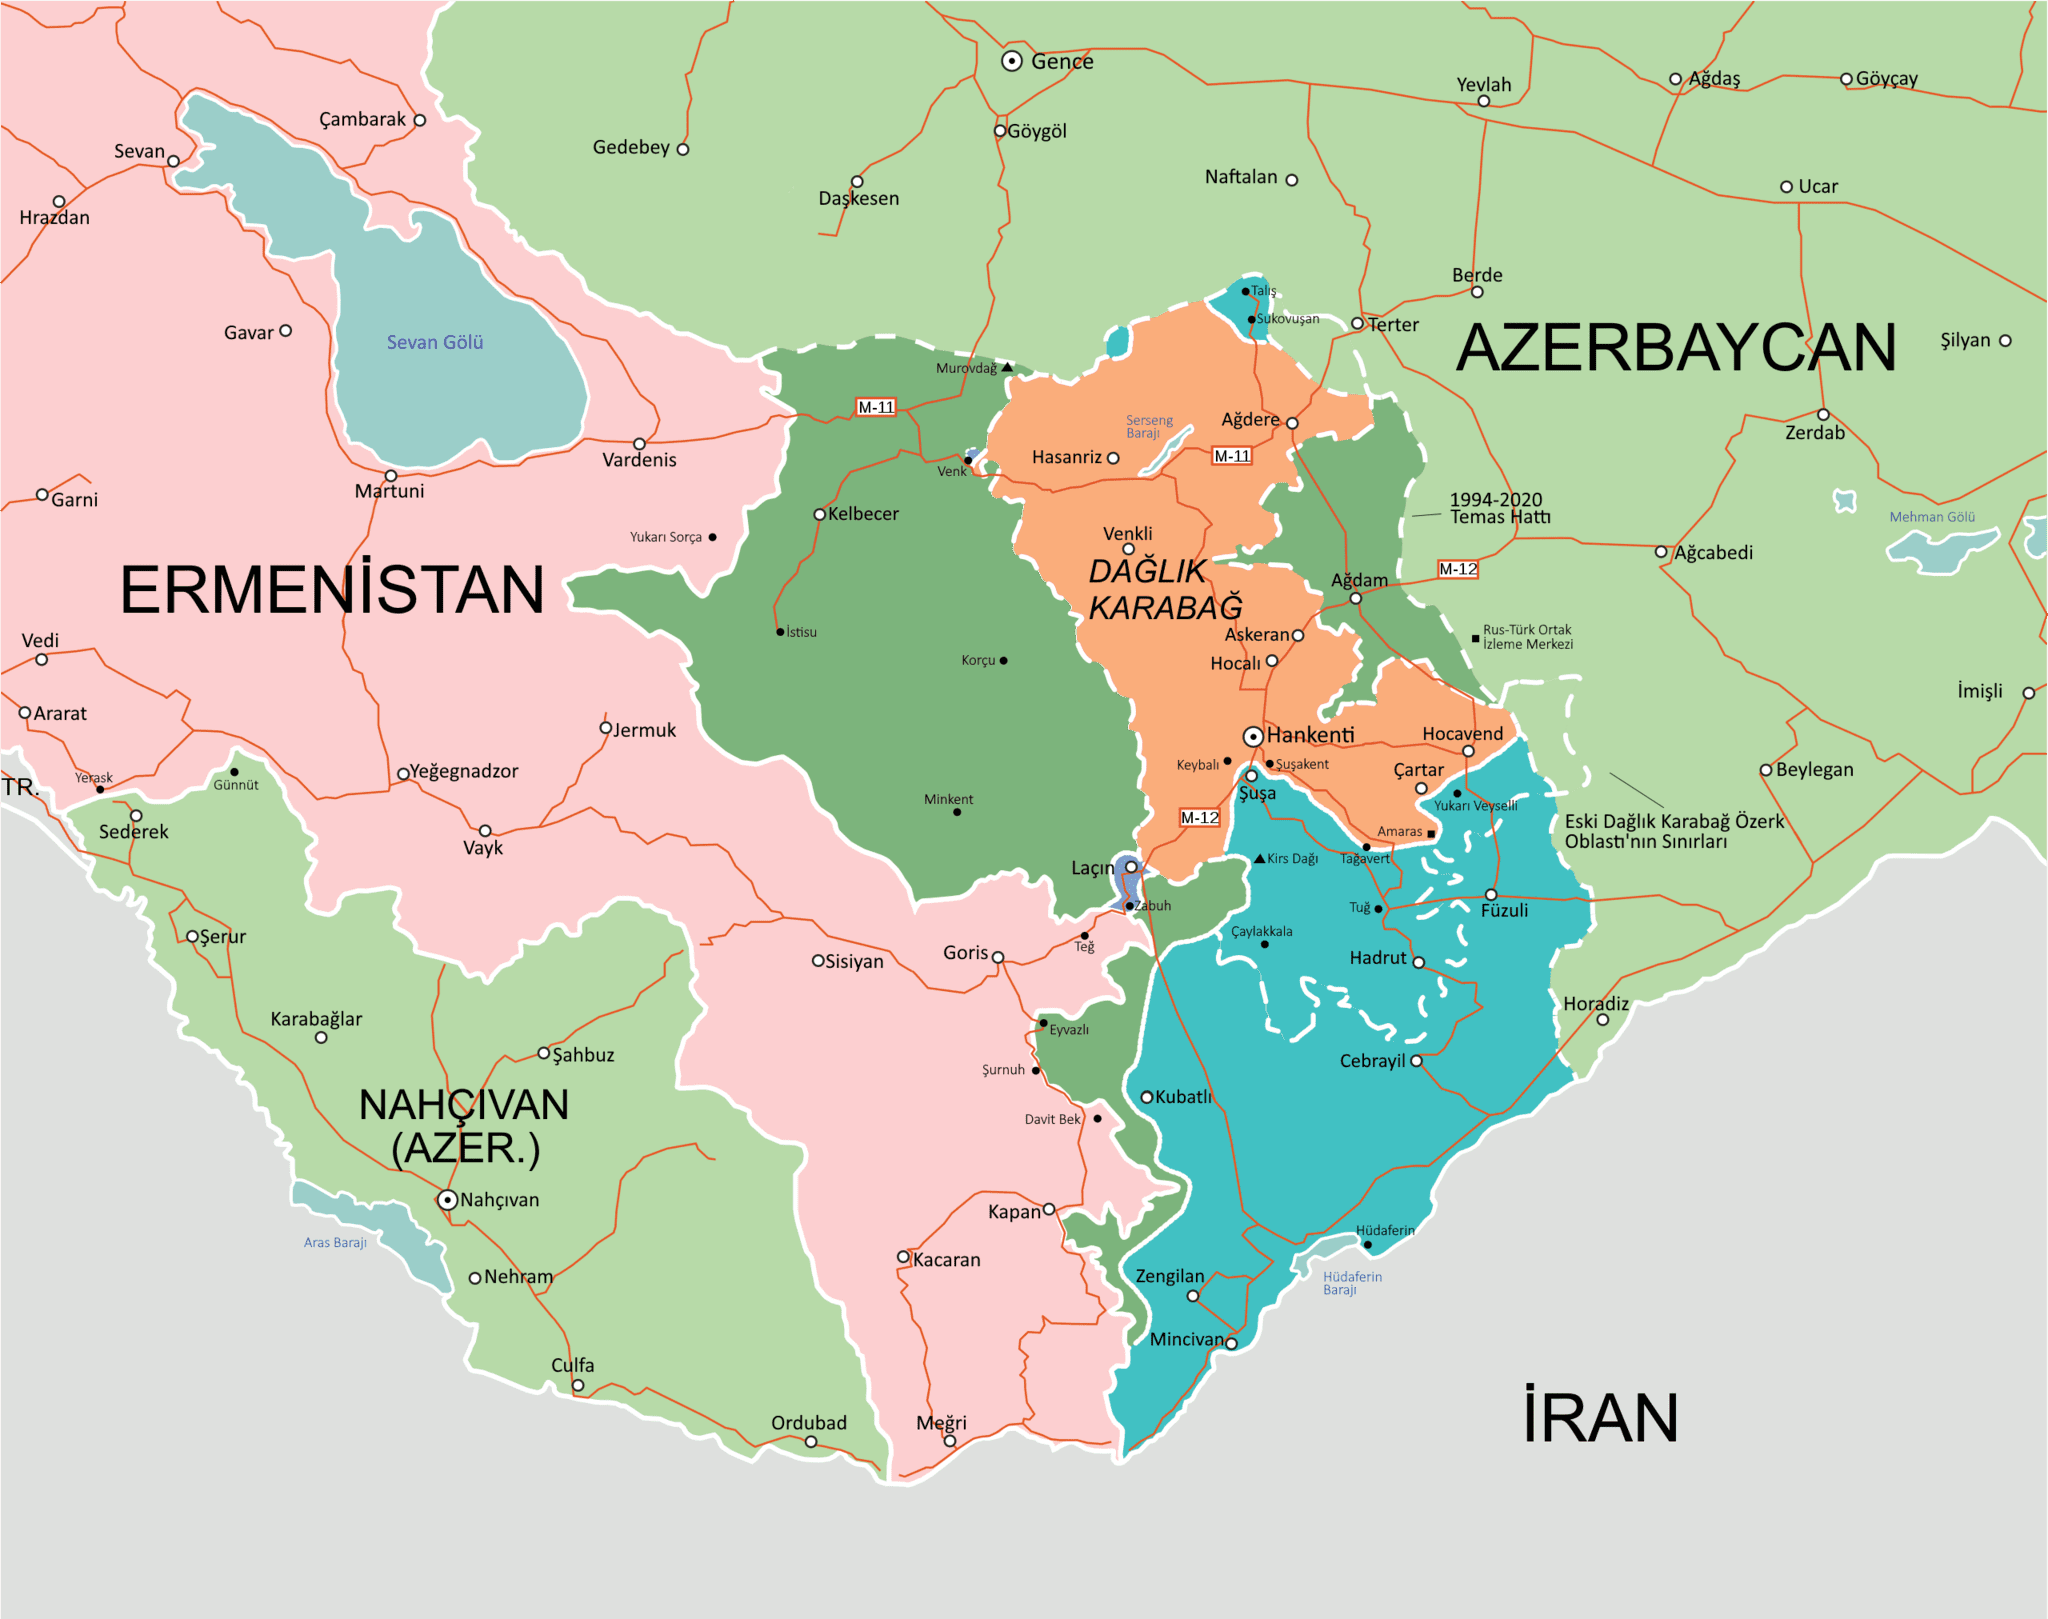 Haber sıradan, fakat anlamı büyük: İran, Ermenistan'ın Kapan şehrine başkonsolos atadı. Kapan, Ermenistan'ın güneydoğusunda Azerbaycan sınırına 1 kilometre mesafede, nüfusu 35 bin civarındadır. 2020'de işgalden kurtarılmış, henüz iskâna açılmamış Zengilan'ın yanıbaşındadır. Kapan, Azerbaycan'a savaş, işgal, soykırım gibi ihlallerinden dolayı savaş tazminatı olarak verilmesi düşünülen Zengezur bölgesindedir. Bu durumda İran'ın Kapan'da başkonsolosluk açmasının nedenlerini araştırmak önemlidir. - 2020 Nagorno Karabakh war Turkish nahcivan daglik karabag azerbaycan ermenistan